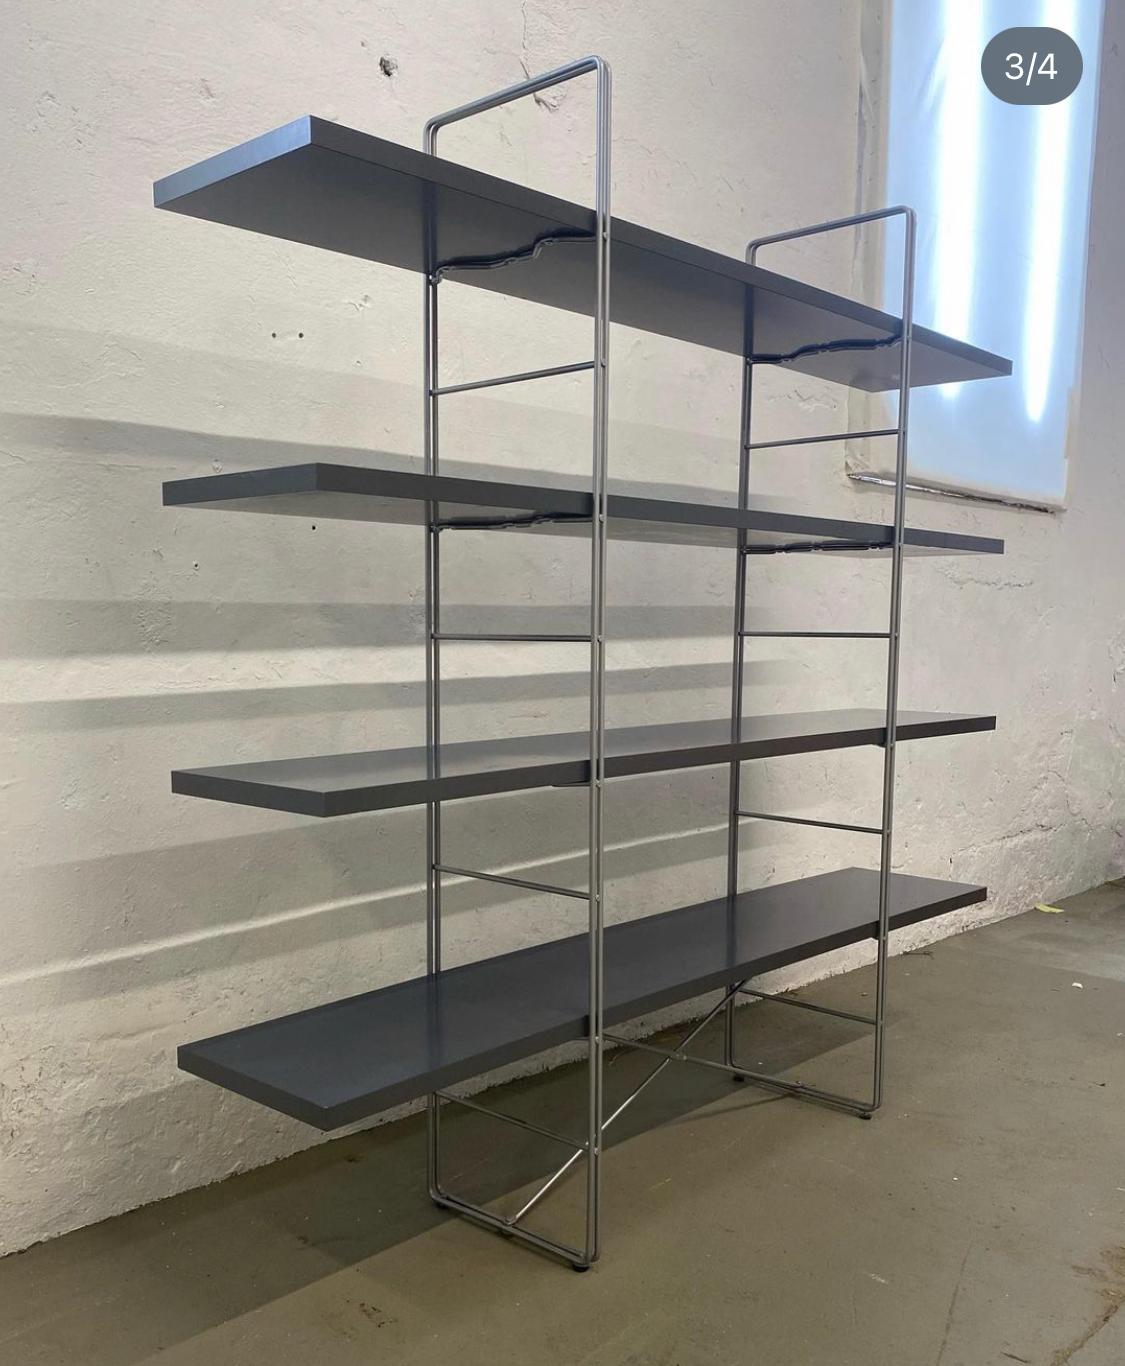 Conçu en 1985 par Niels Gammelgaard pour Ikea, le guide self Enerti comporte 4 étagères sur un système d'échelle en acier.
L'étagère est dans un état vintage merveilleux et est l'étagère parfaite pour n'importe quel espace. 